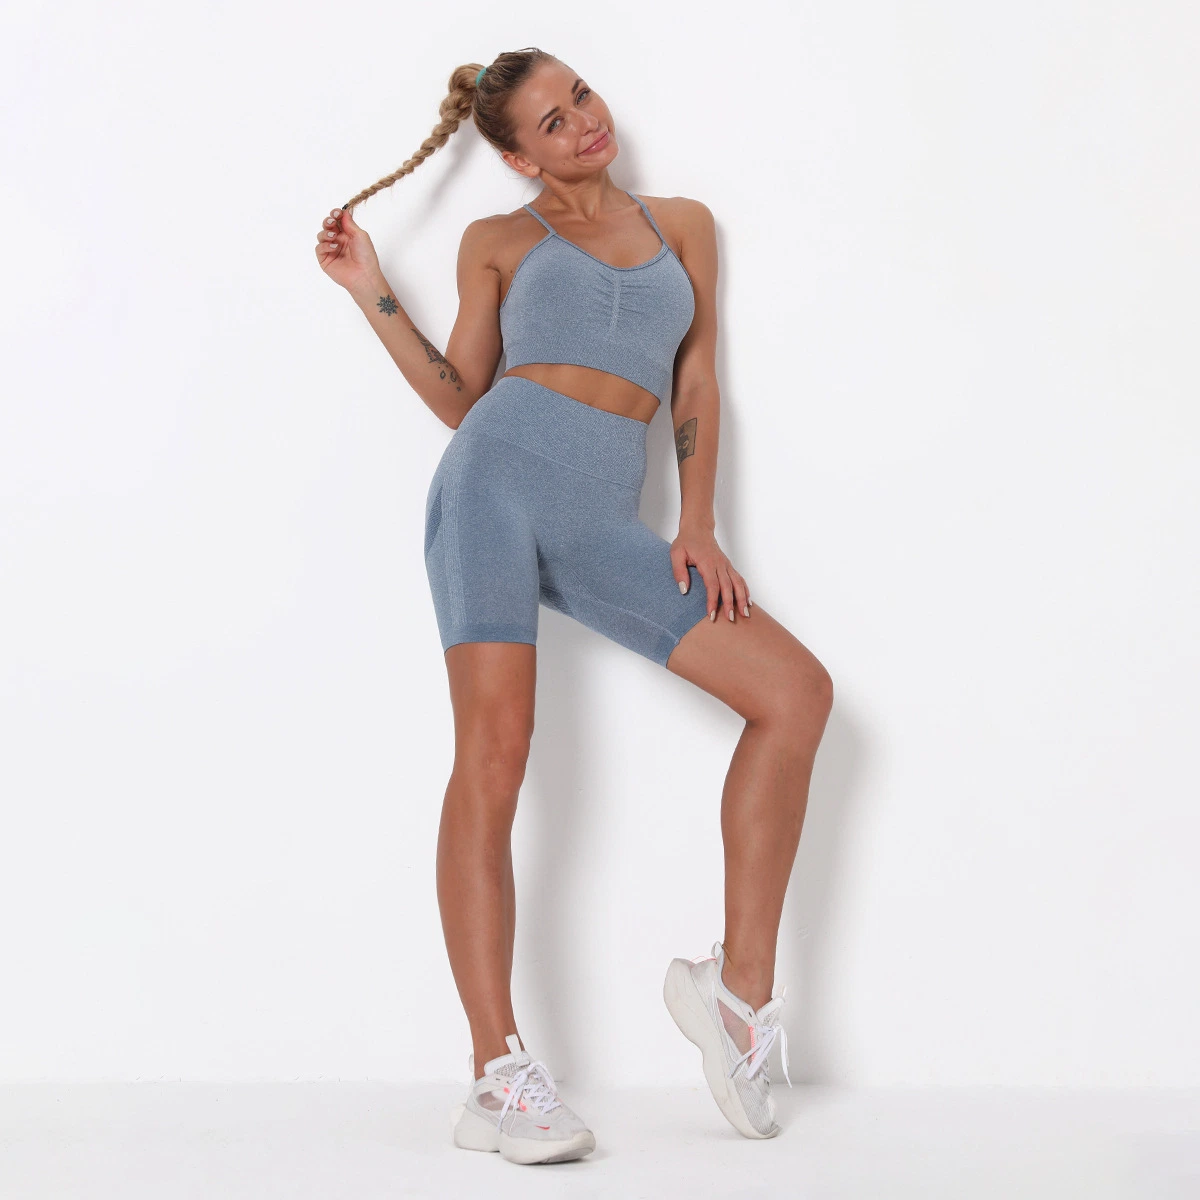 Женская экипировка Yoga Set бесшовная тренировка для фитнеса эластичная Одежда